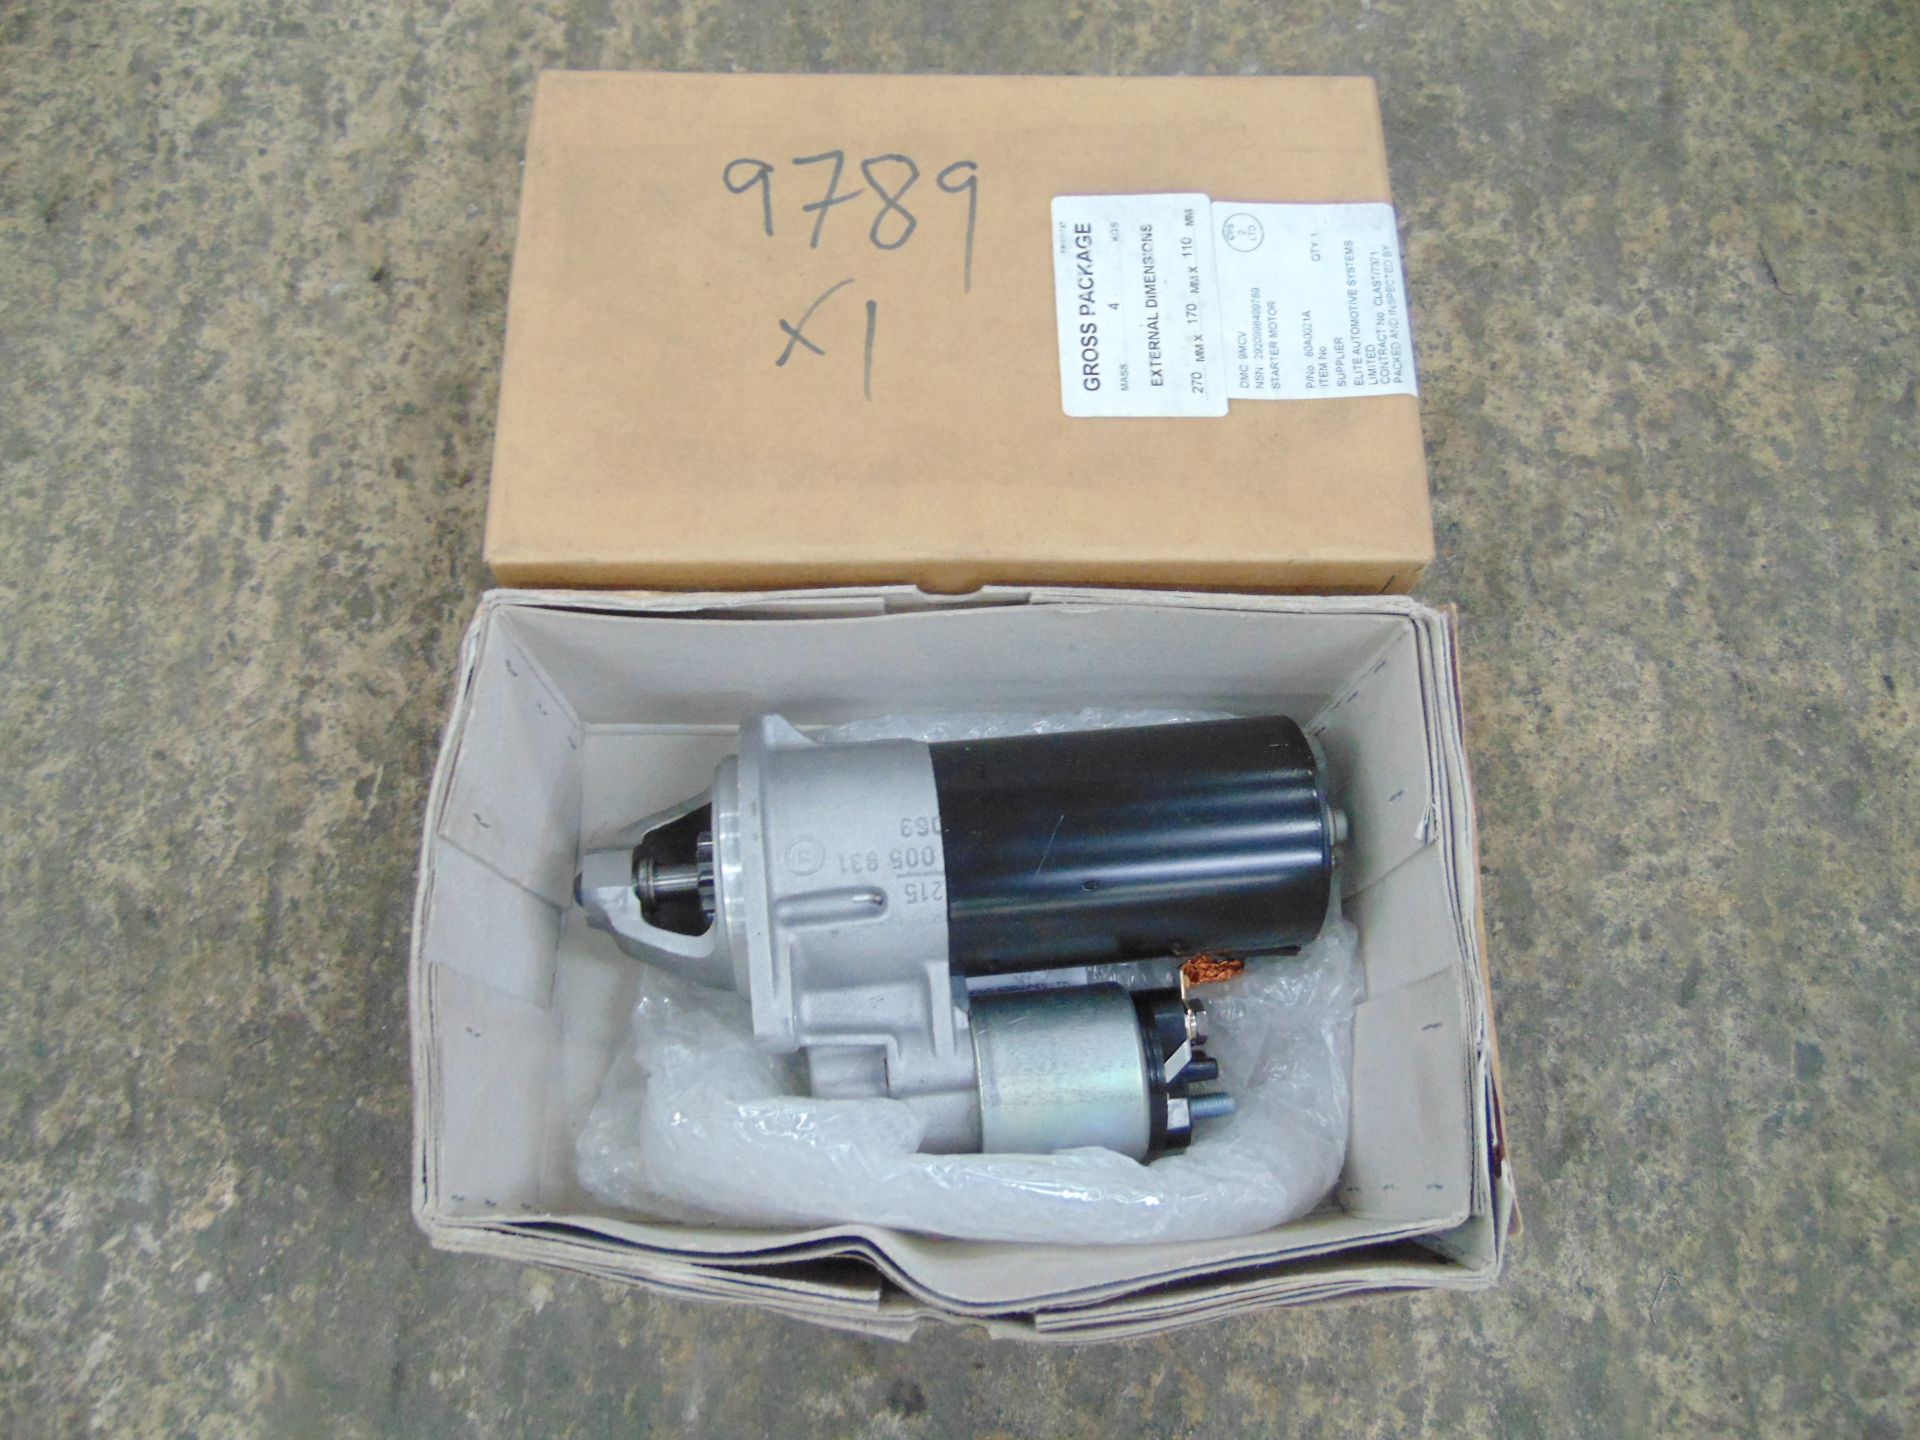 2 x Bosch Starter Motor. P/No 0 001 111 003